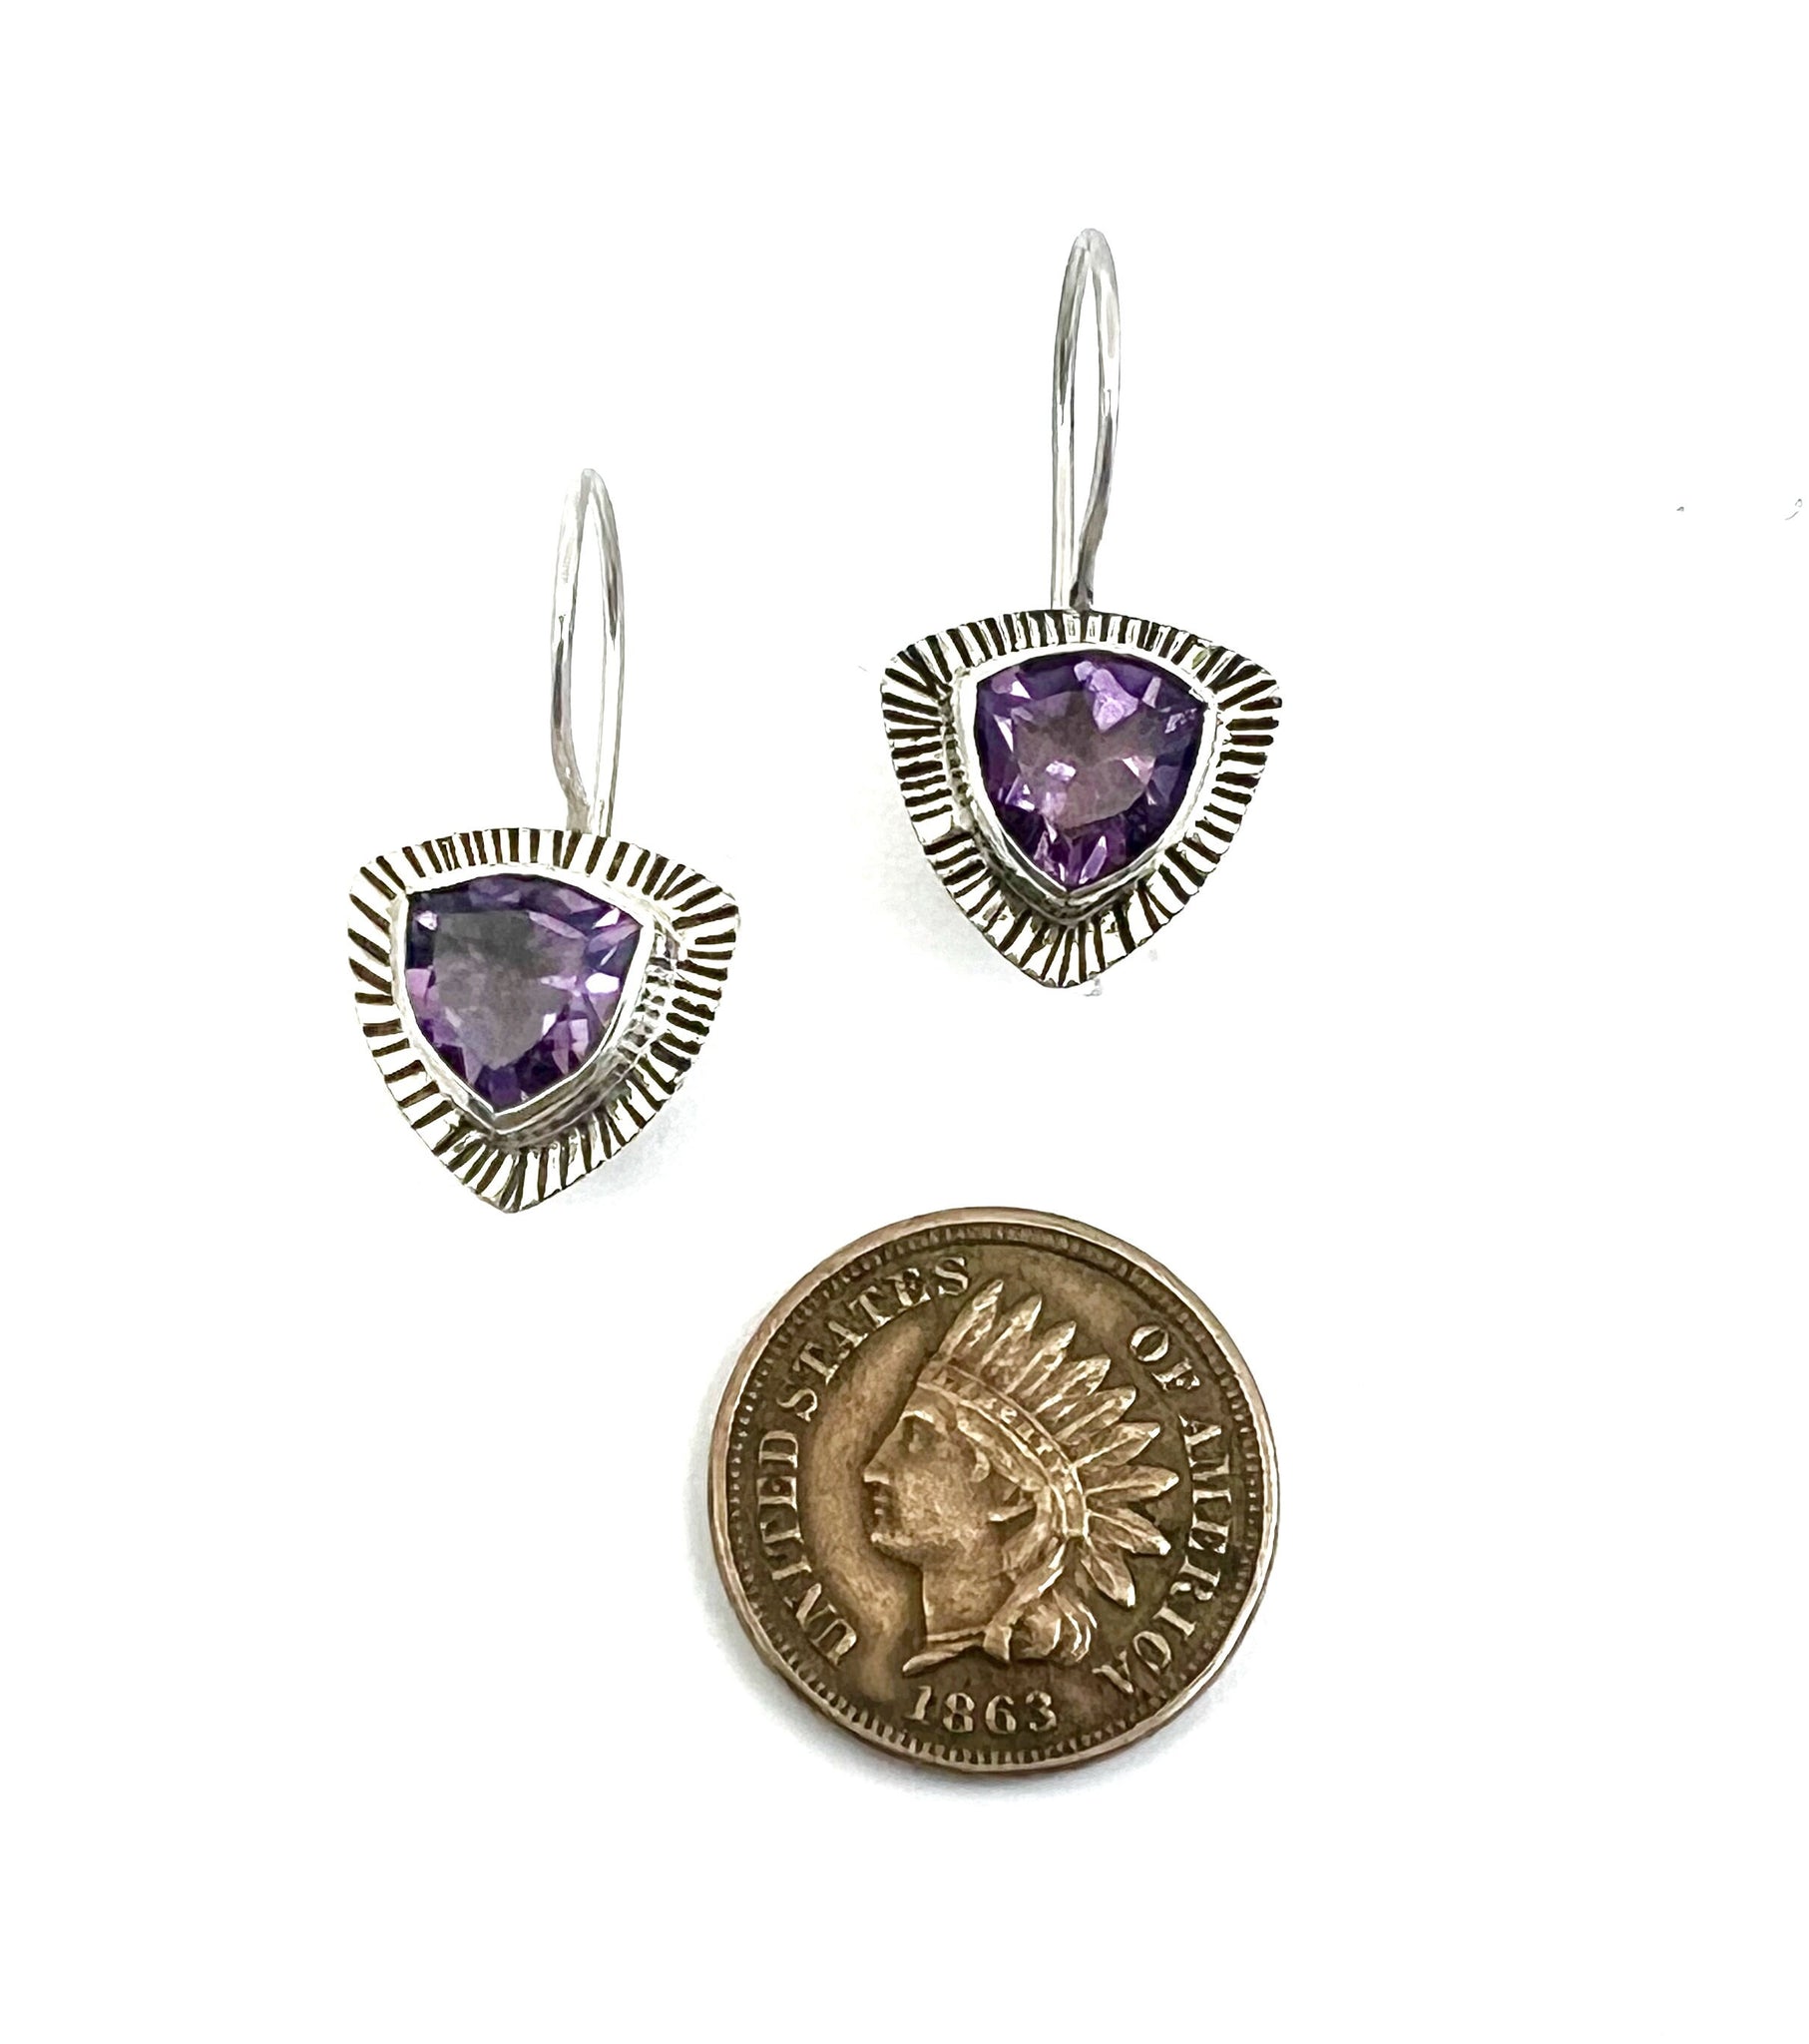 Amethyst Trillion Earrings In Sterling Silver, Purple Gemstone Earrings, February Birthstone Jewelry